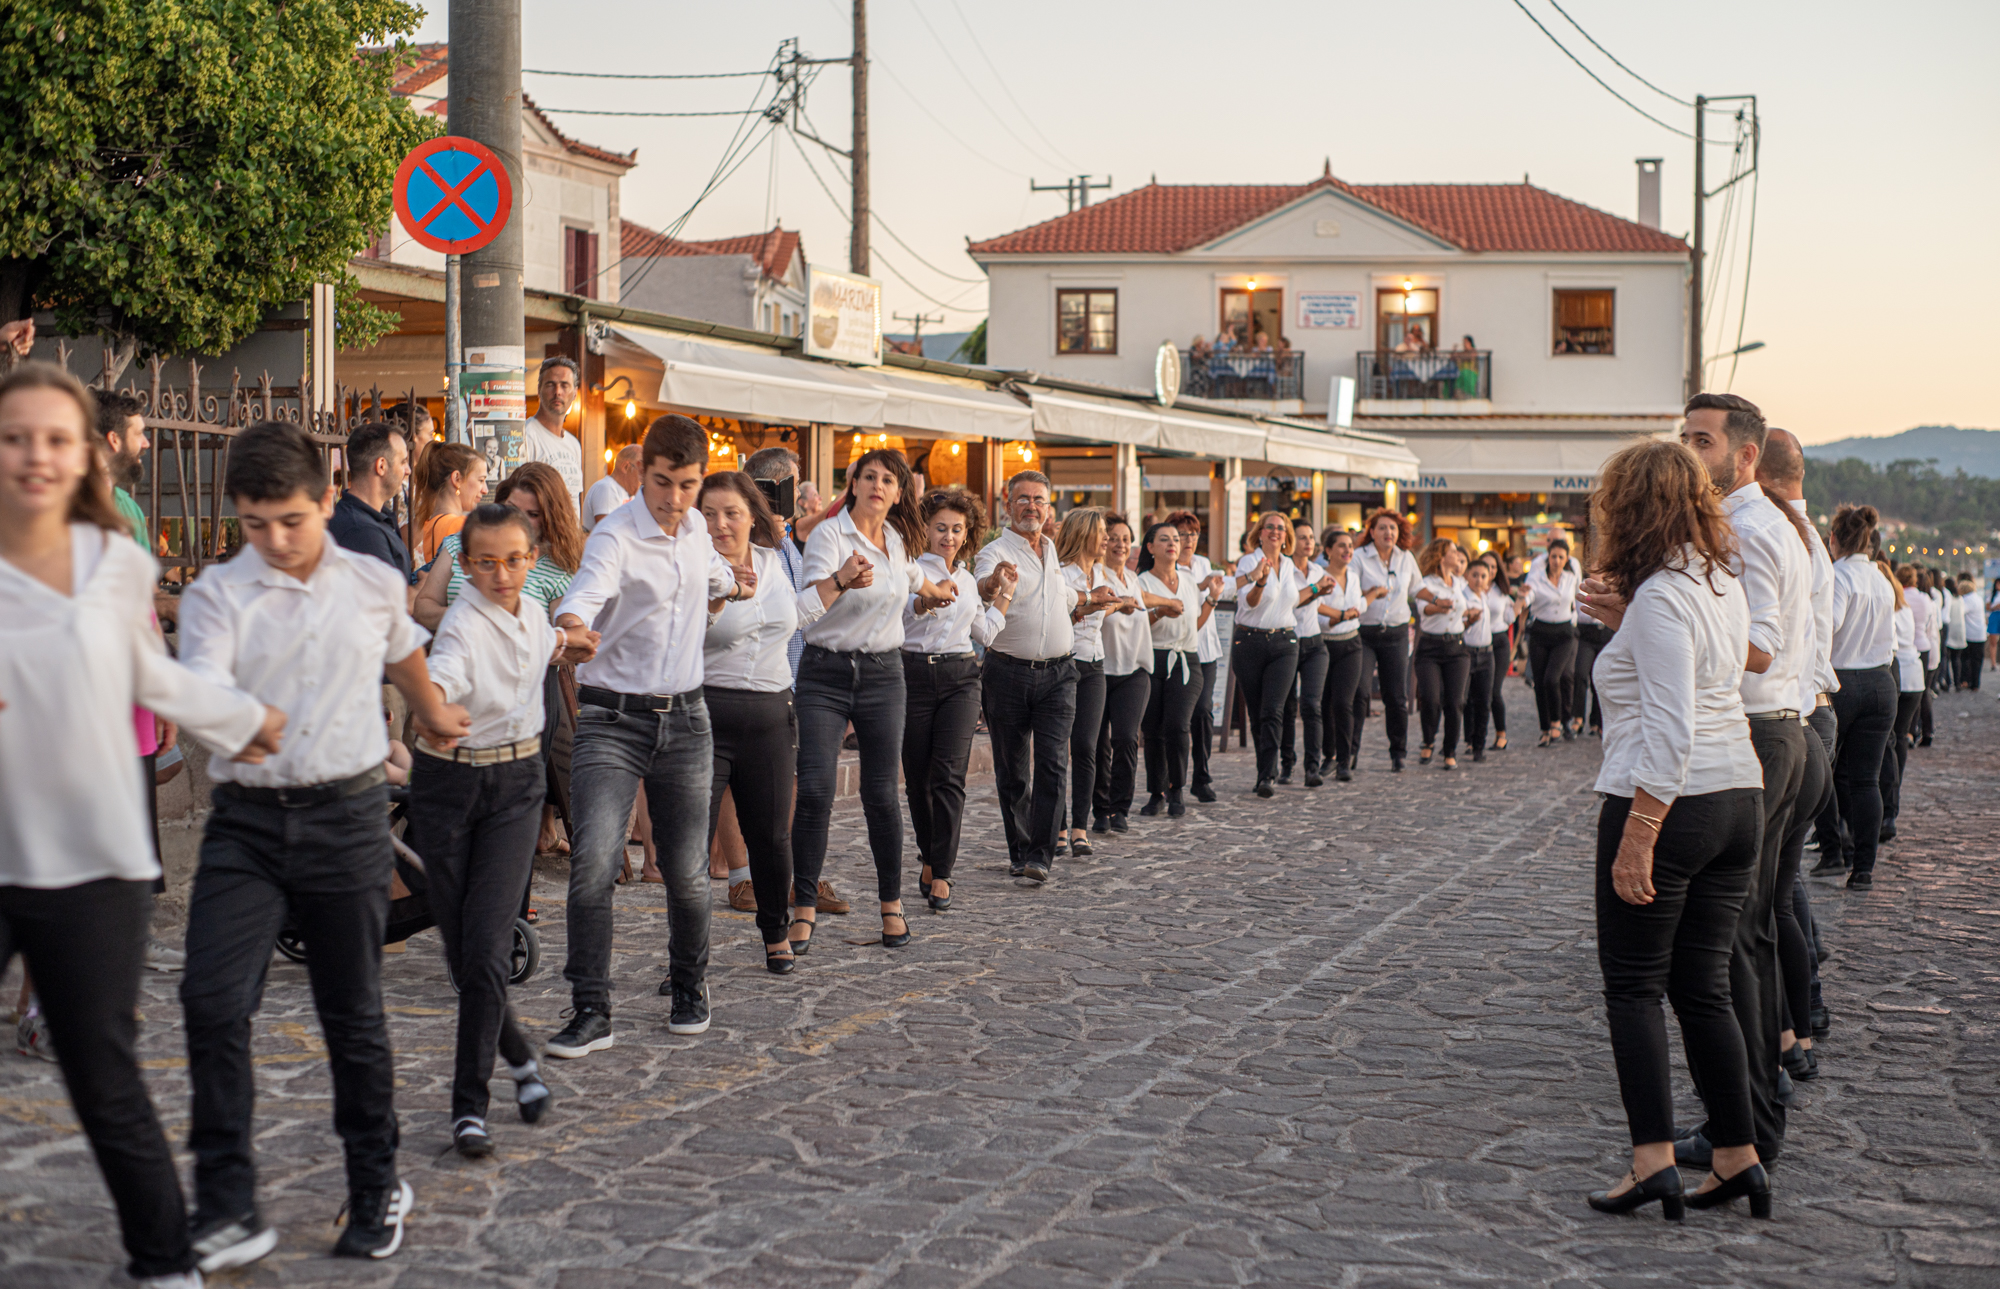 Γεμάτη χορό και νηστίσιμες γεύσεις η δεύτερη μέρα του Lesvos Food Fest στην Πέτρα